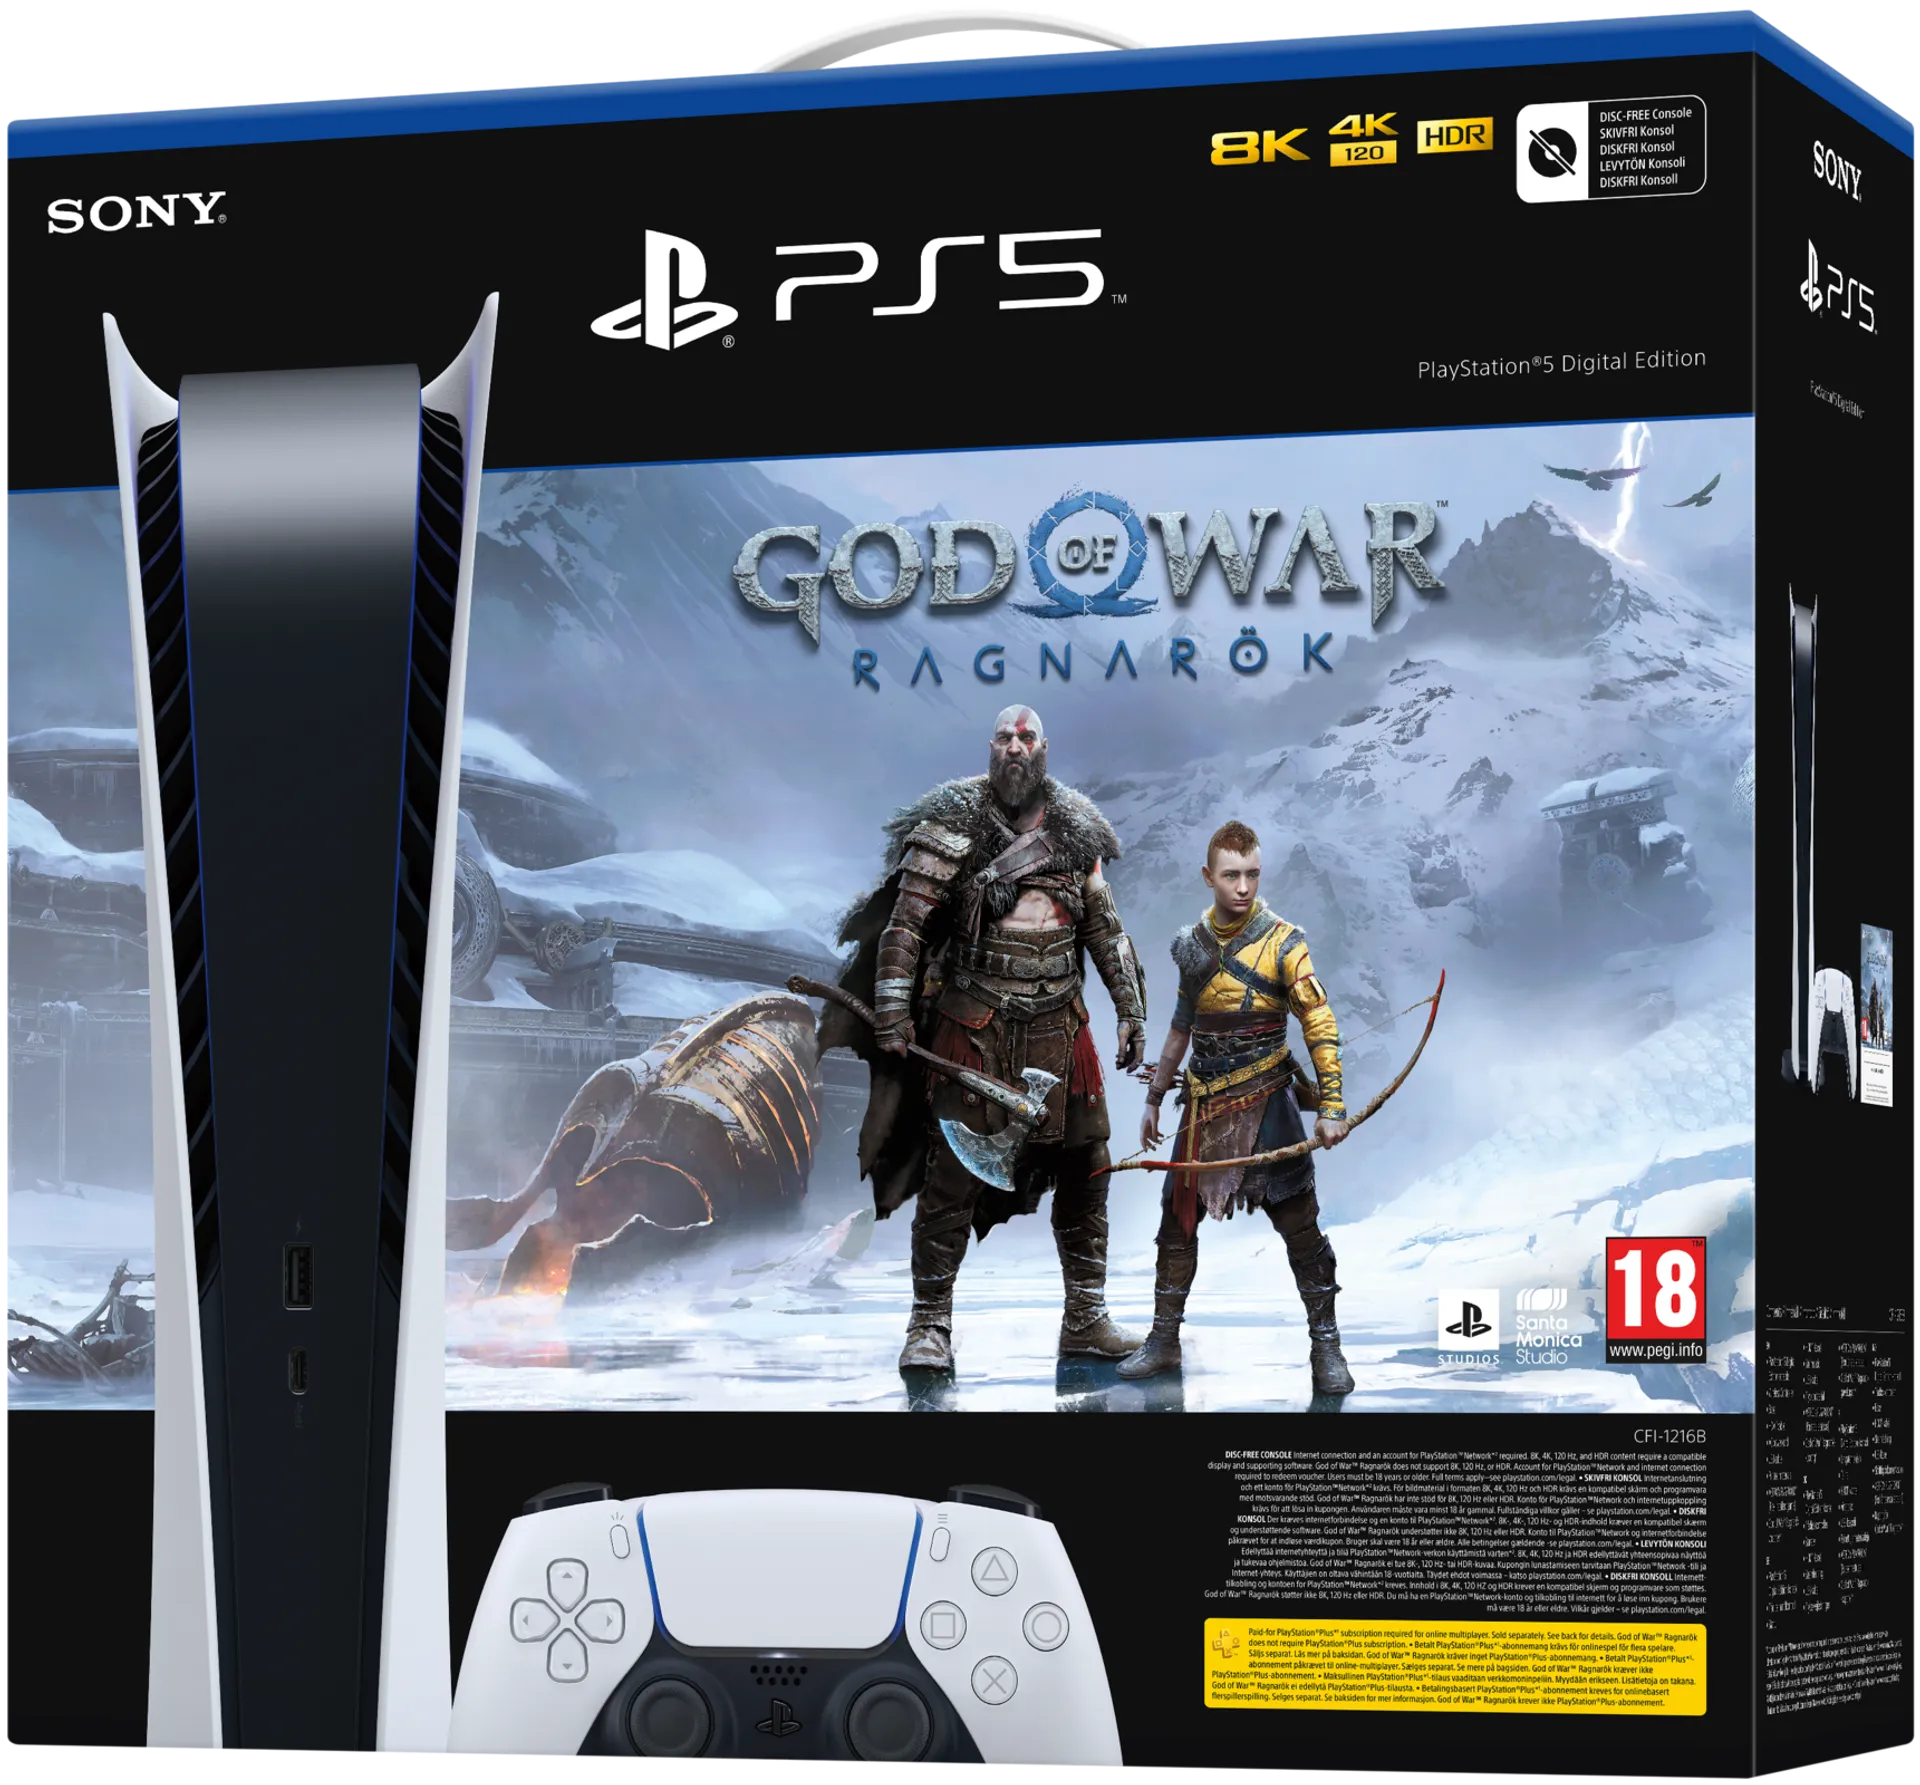 PS5 Digital God of War